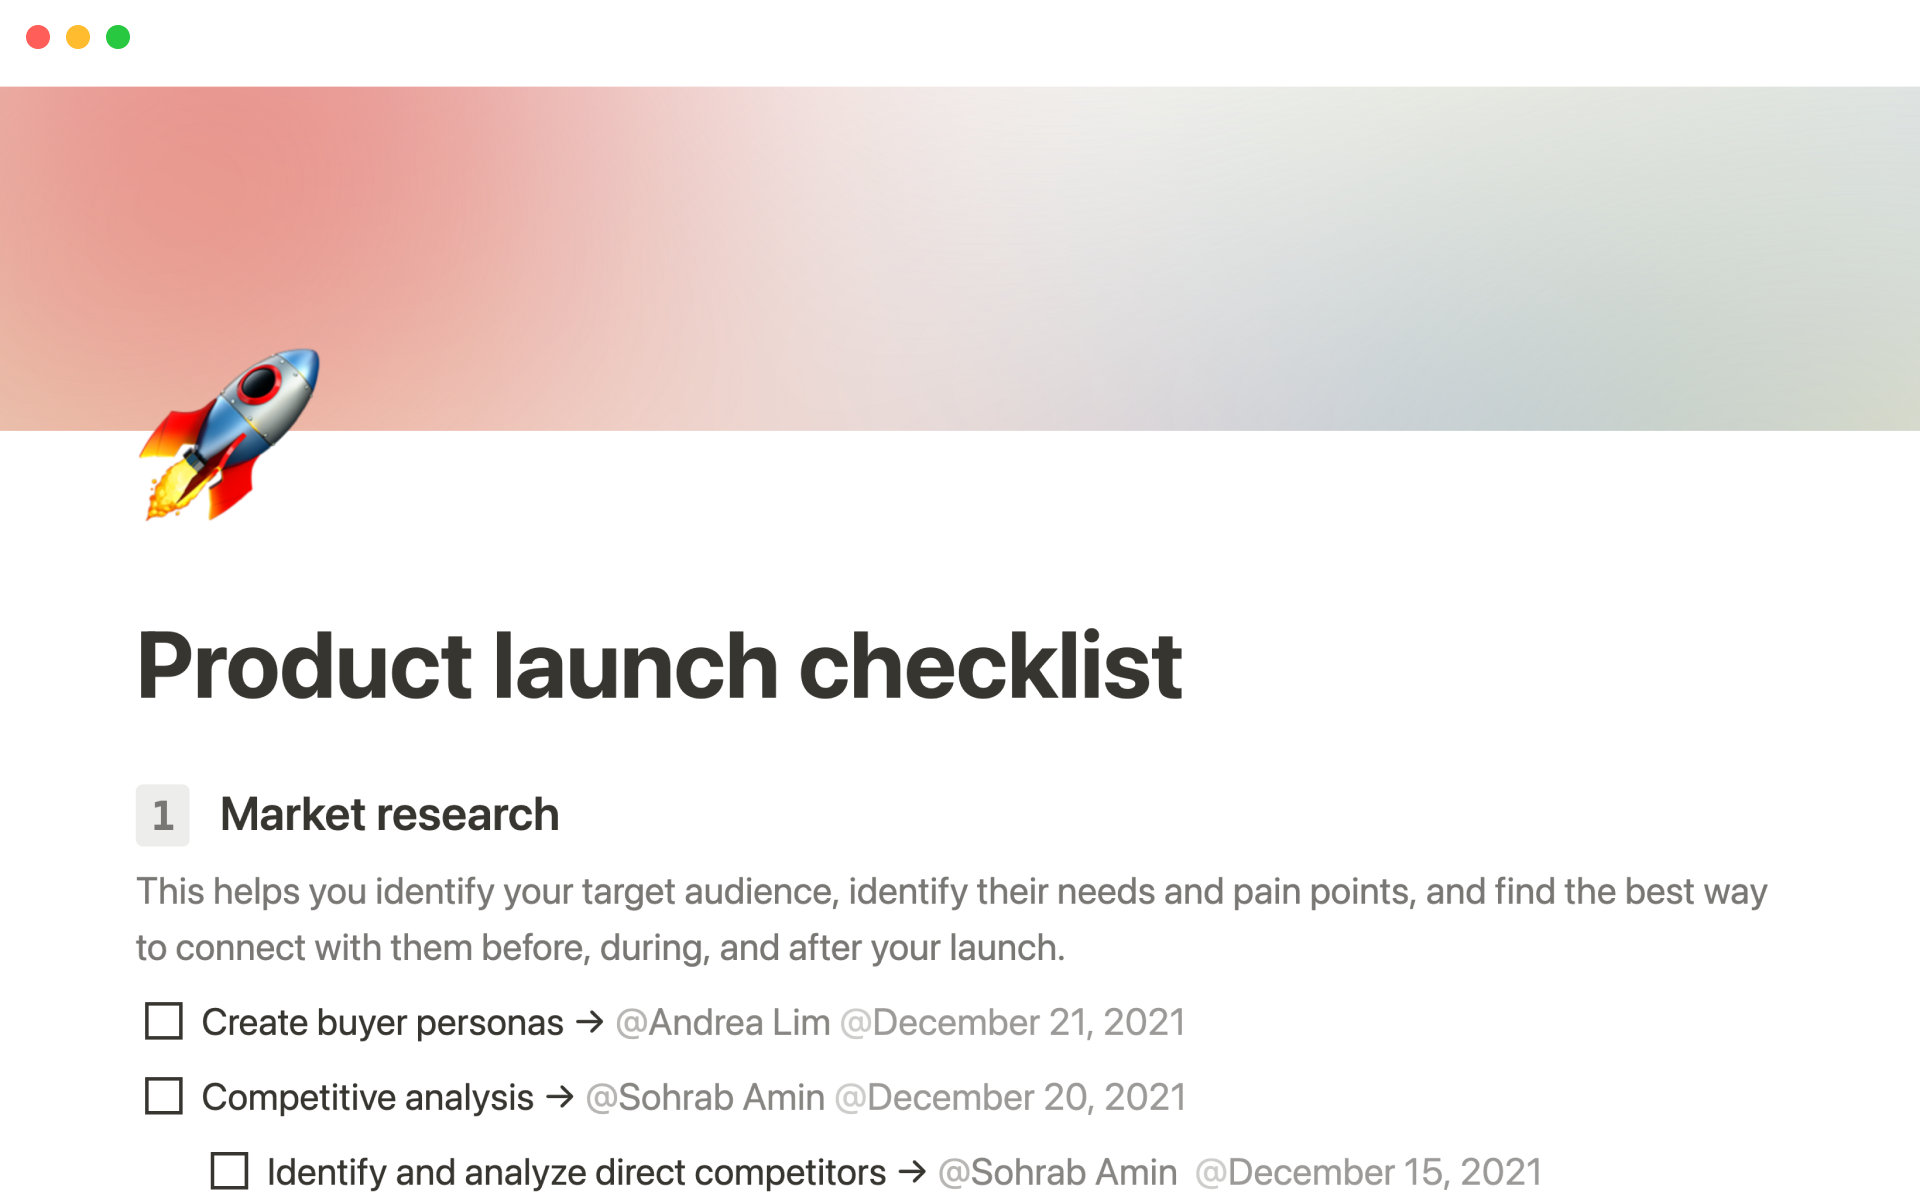 Uma prévia do modelo para Product launch checklist